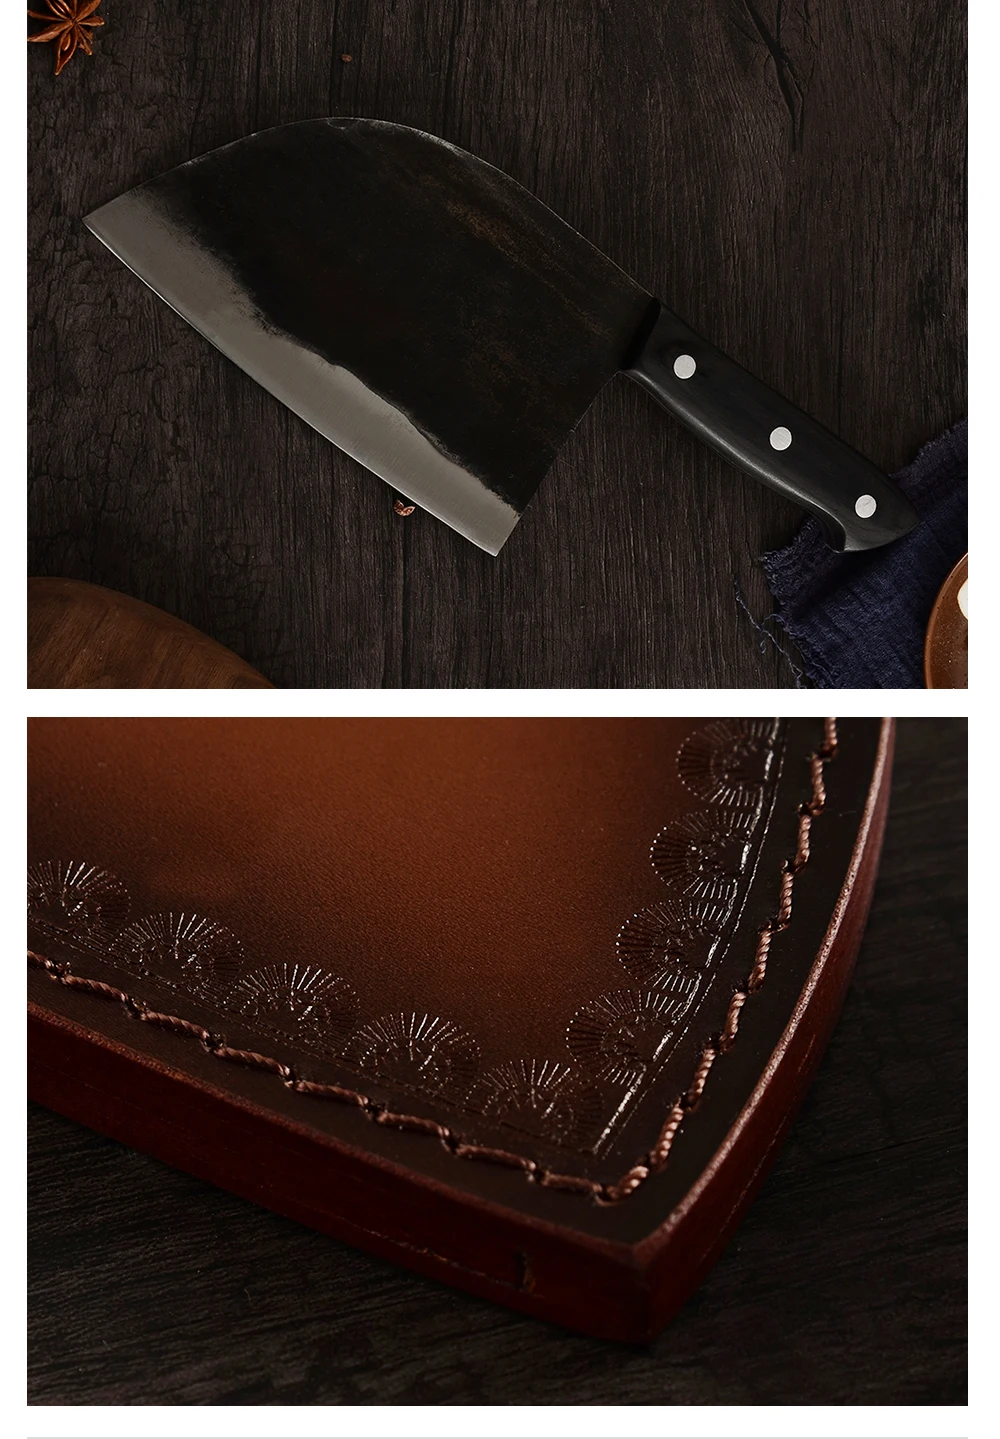 XYj кухонная Крышка для ножа, кованый нож из высокоуглеродистой стали, защитный чехол для мясника, кухонная портативная защитная оболочка